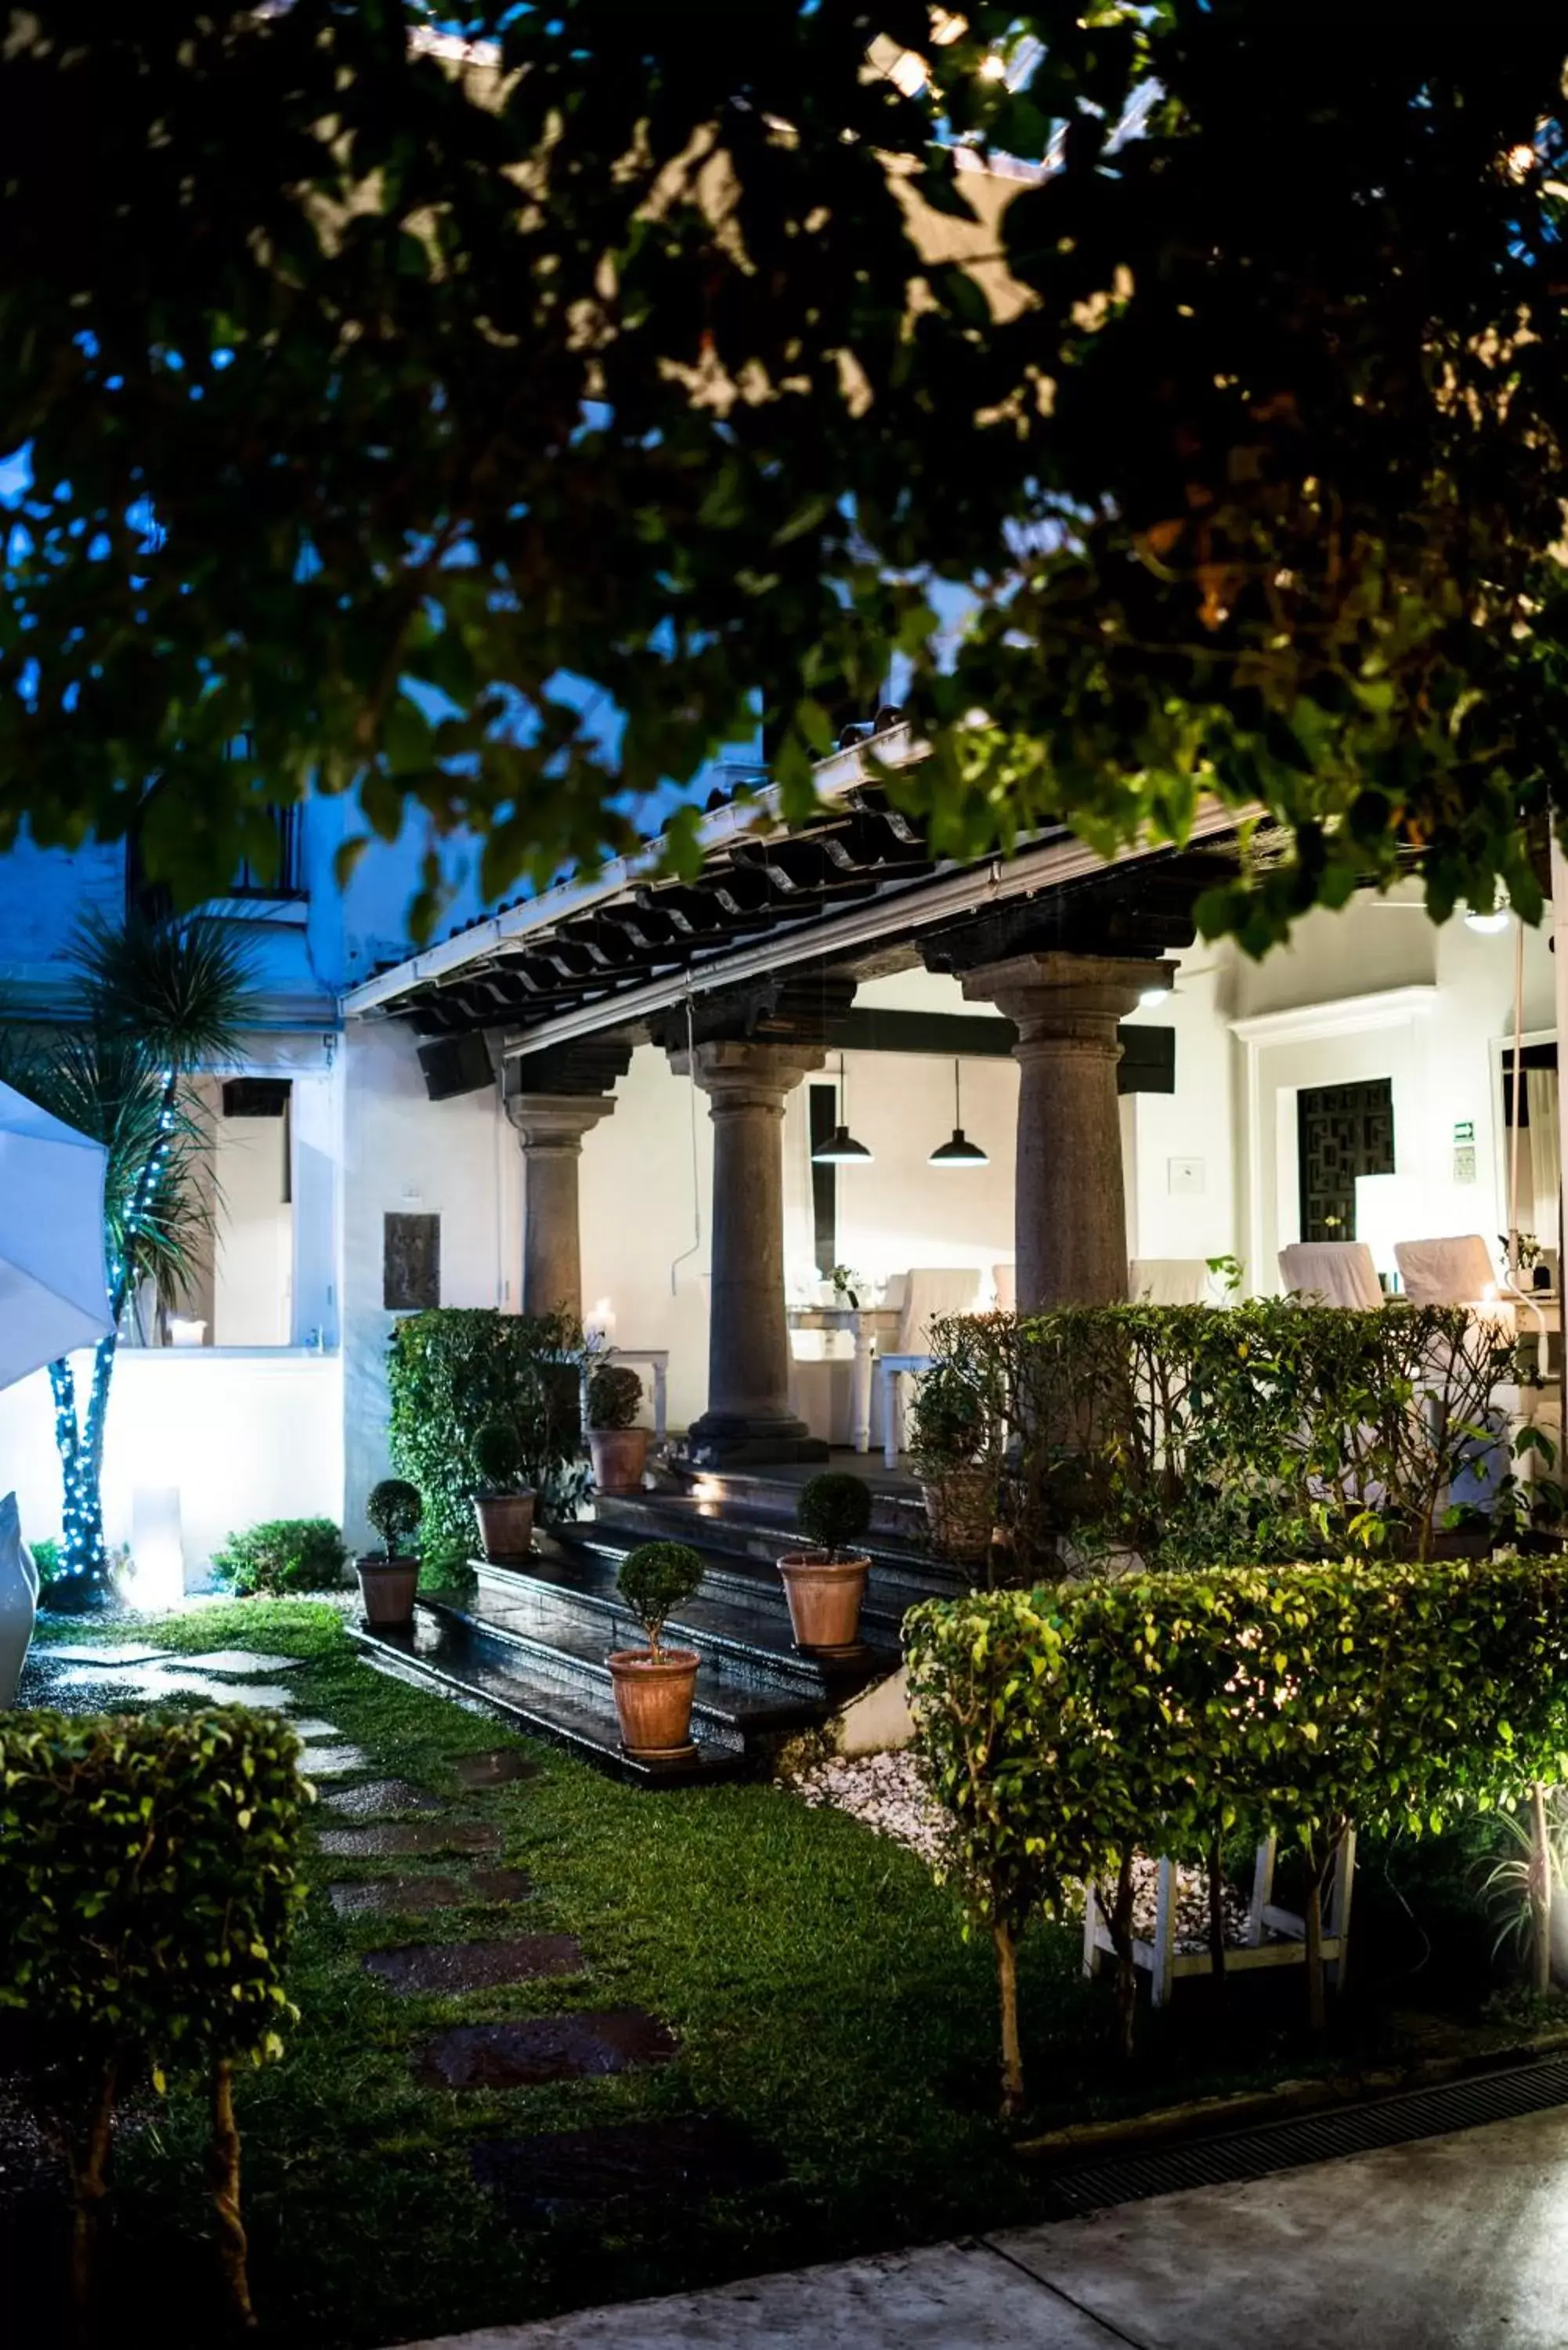 Property building, Patio/Outdoor Area in Las Casas B&B Boutique Hotel, Spa & Restaurante Cuernavaca